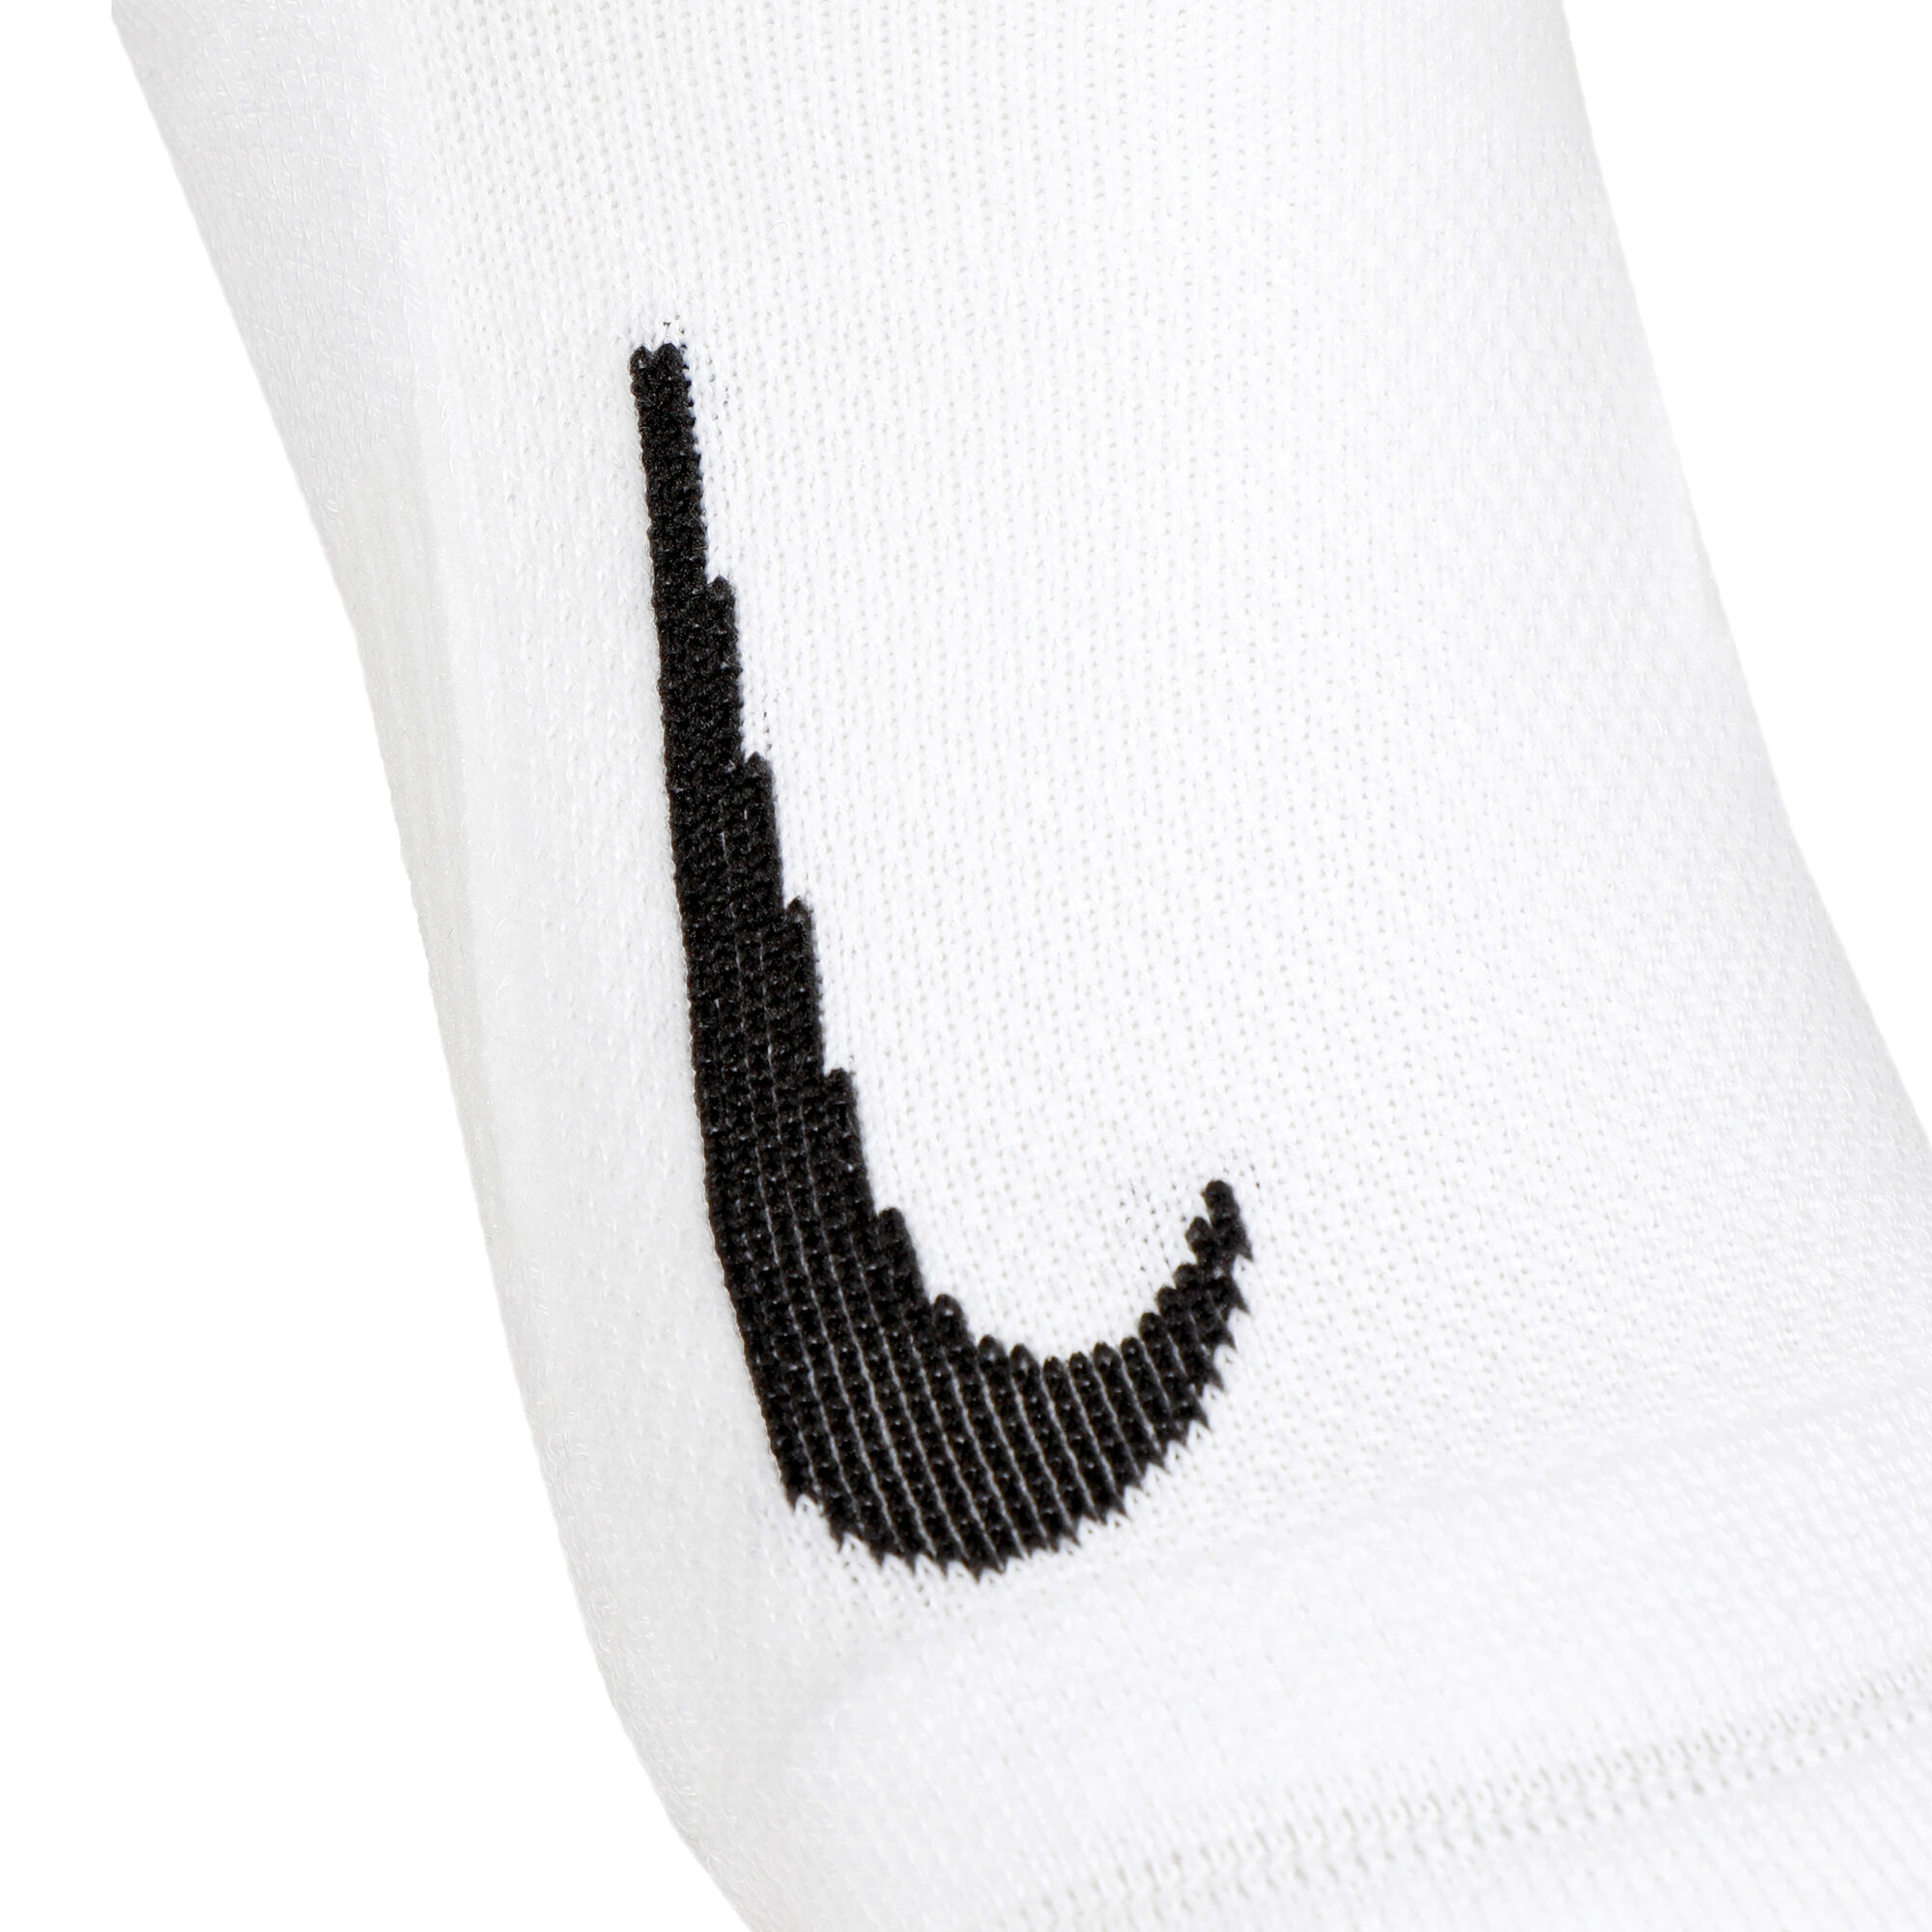 Nike Performance Cushion No-Show Running Sock Chaussettes running - Noir :  infos, avis et meilleur prix. Vêtements running Homme.